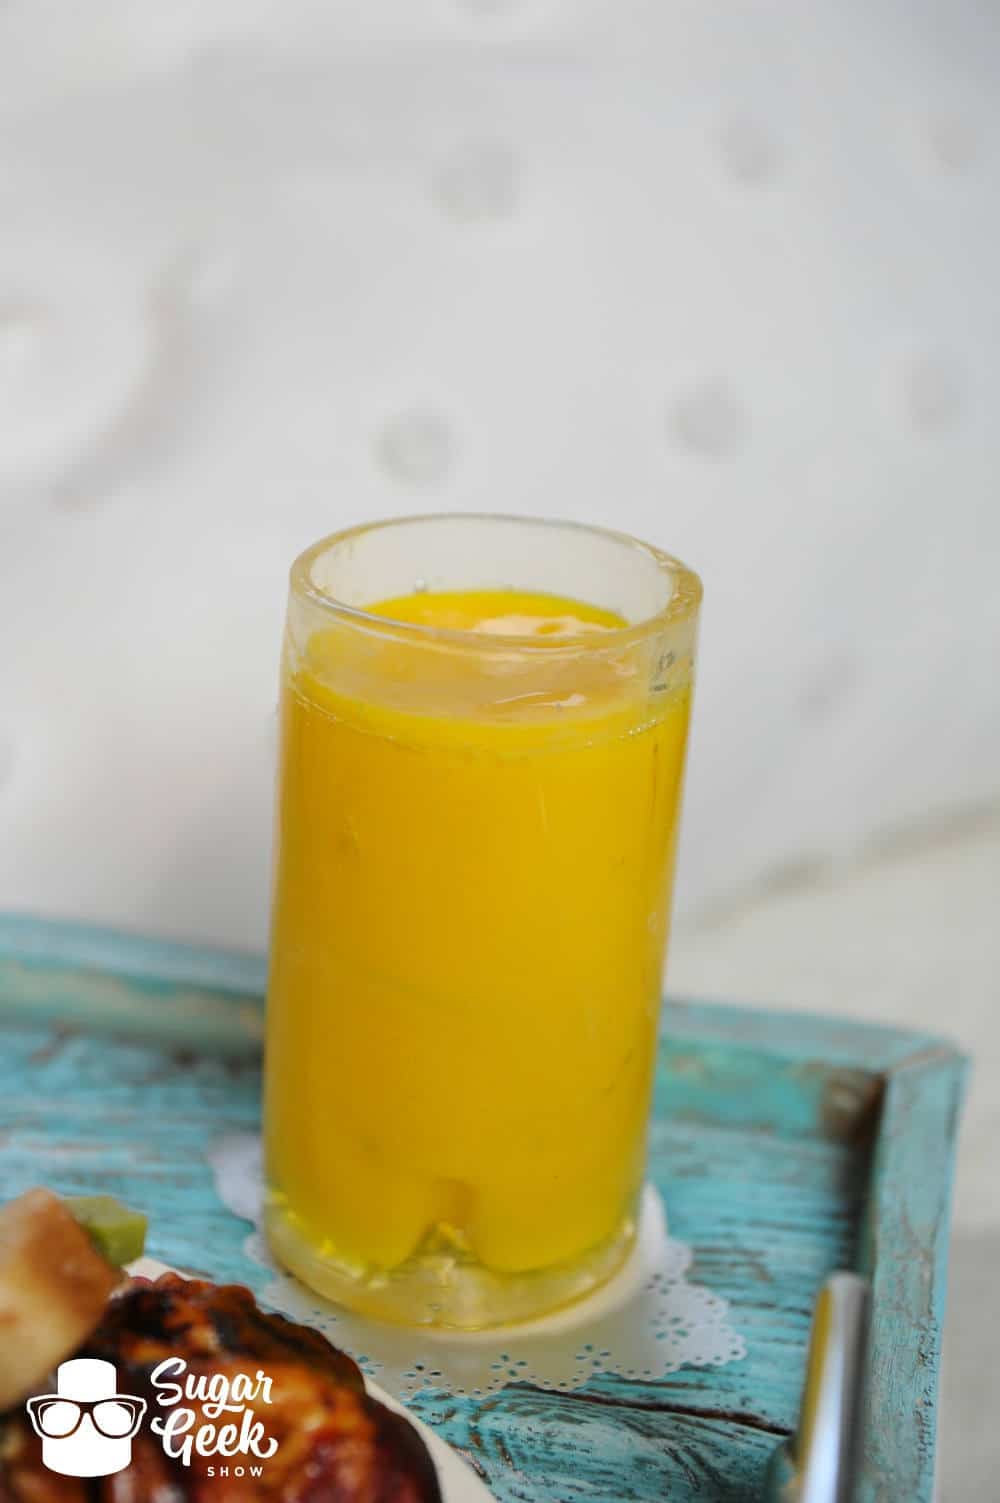 Sugar orange juice glass